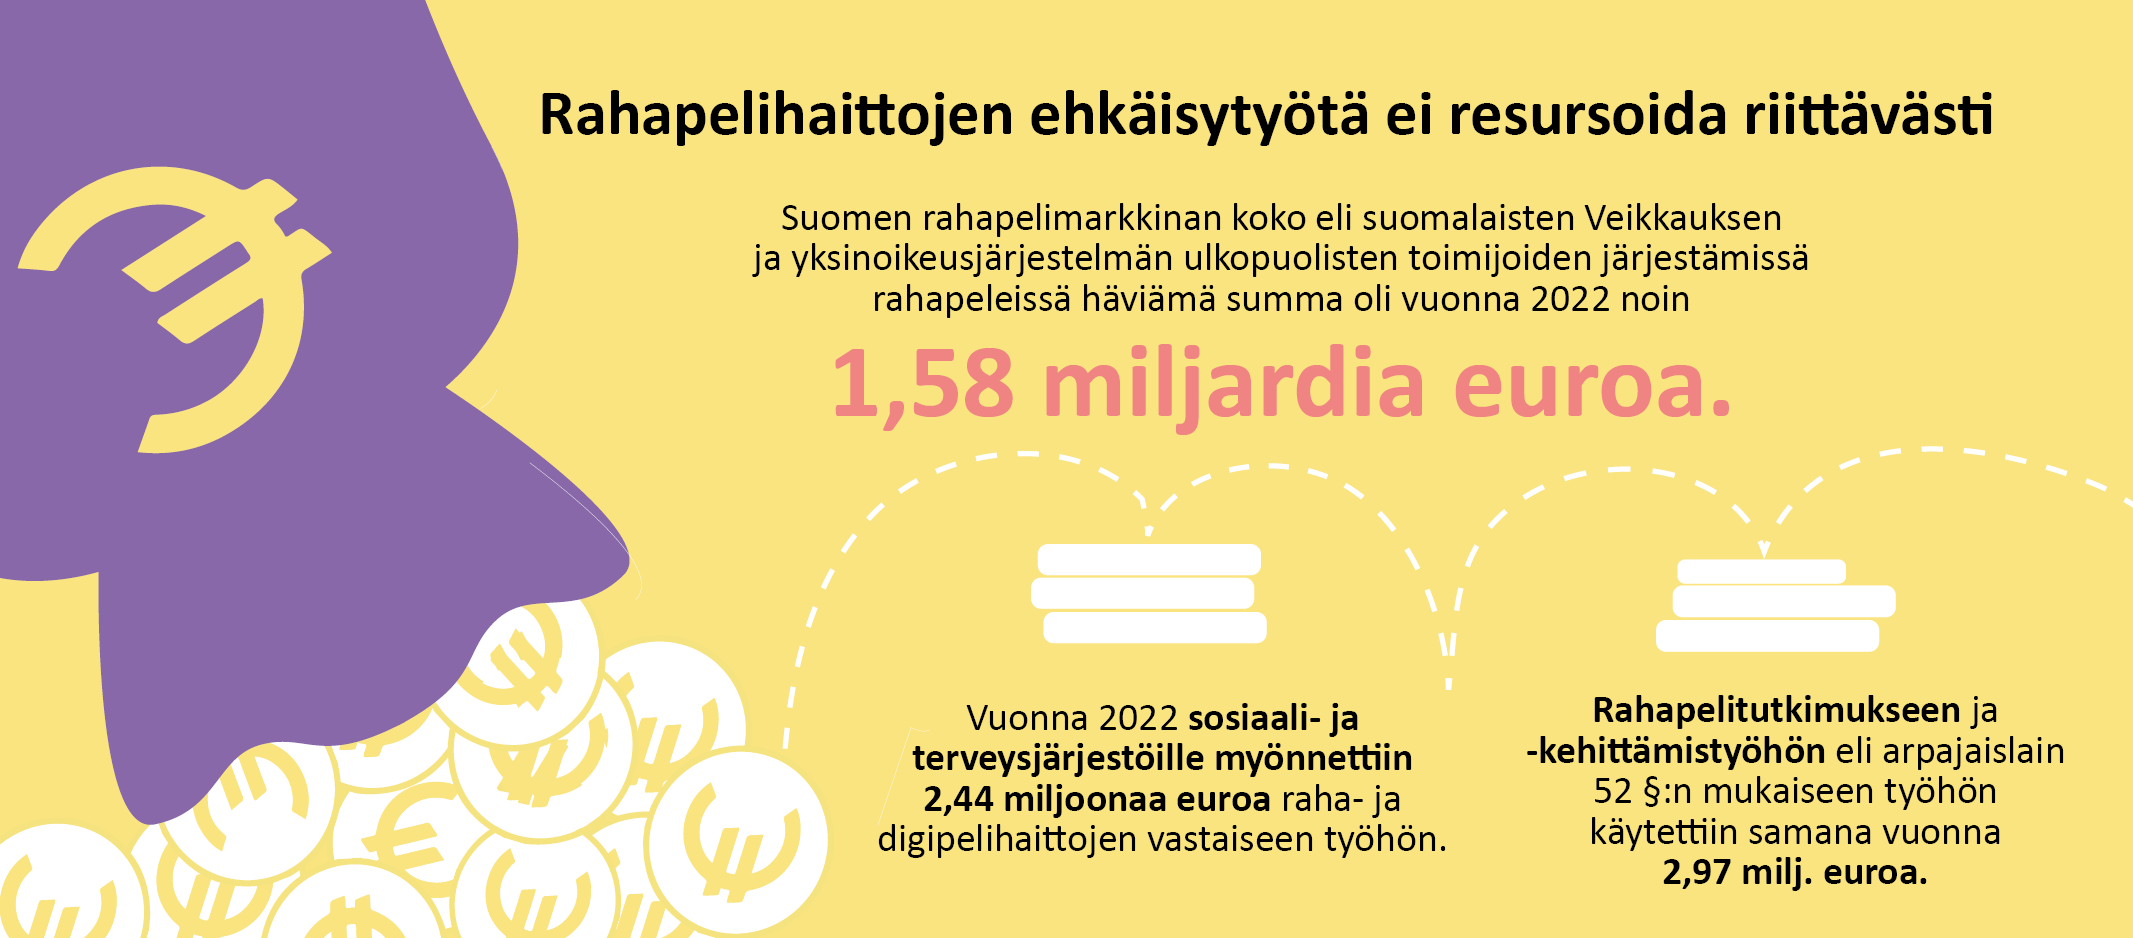 Suomen rahapelimarkkinan koko eli suomalaisten Veikkauksen  ja yksinoikeusjärjestelmän ulkopuolisten toimijoiden järjestämissä  rahapeleissä häviämä summa oli vuonna 2022 noin 1,58 miljardia euroa. Vuonna 2022 sosiaali- ja  terveysjärjestöille myönnettiin  2,44 miljoonaa euroa raha- ja  digipelihaittojen vastaiseen työhön. Rahapelitutkimukseen ja  -kehittämistyöhön eli arpajaislain  52 §:n mukaiseen työhön  käytettiin samana vuonna  2,97 milj. euroa. 